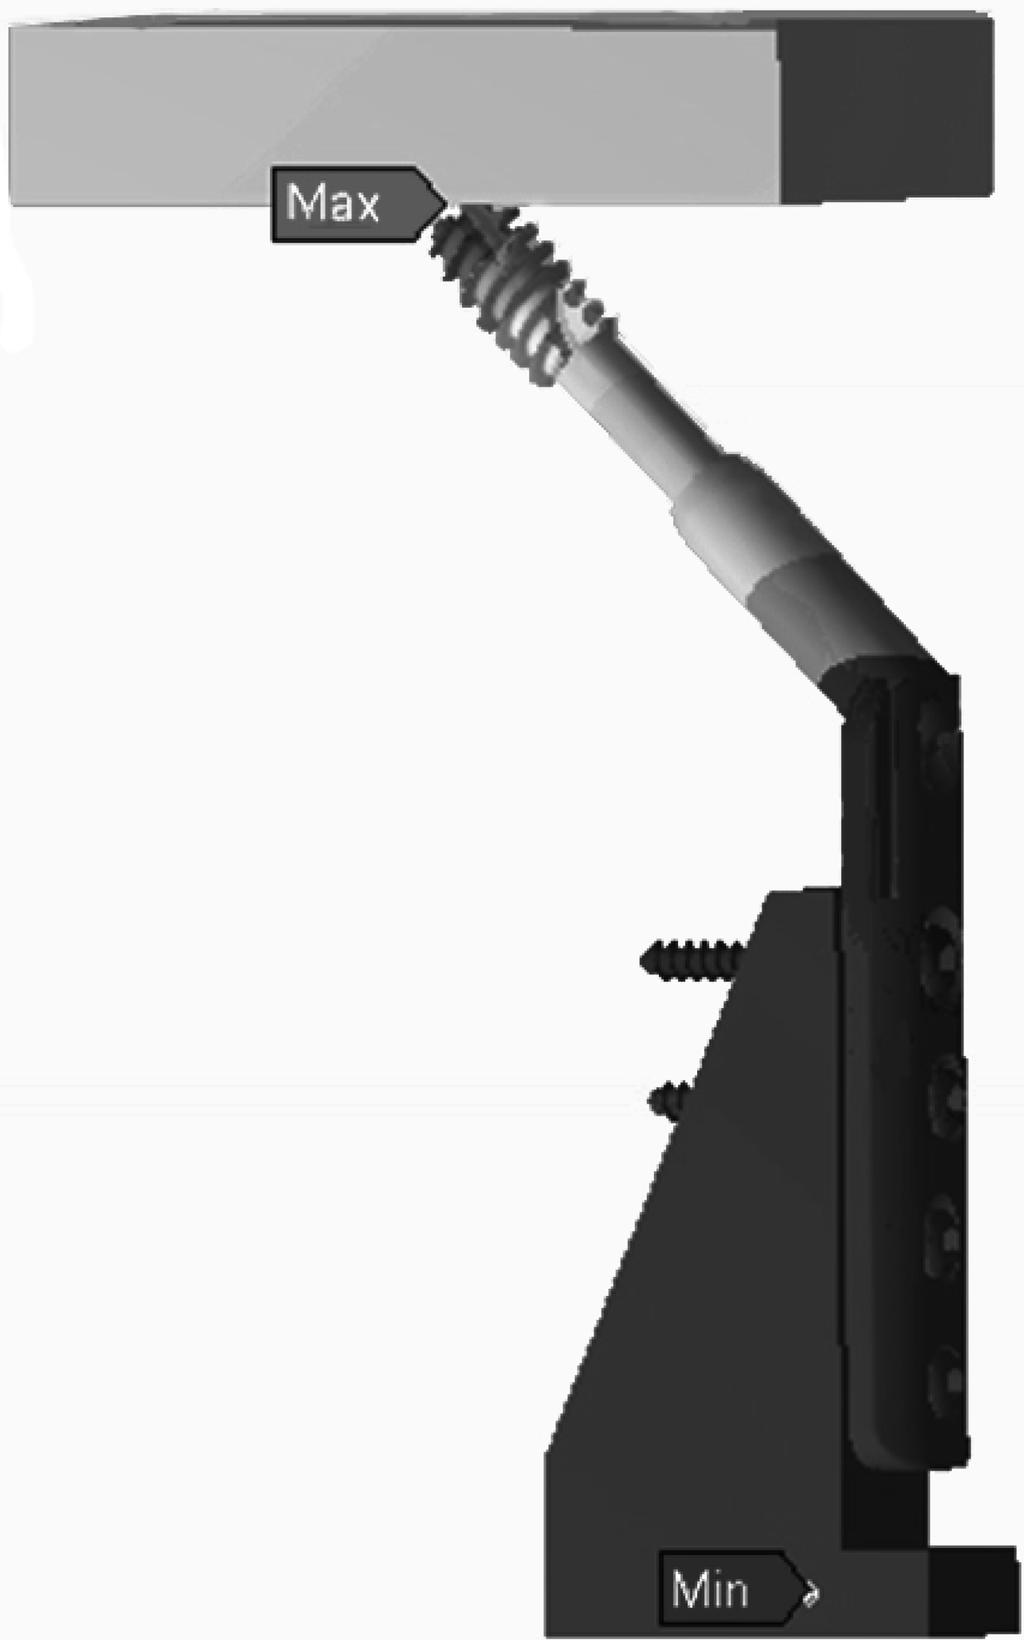 42 하병조 최성훈 박상수 일어나는압박고나사의변형은탄성변형으로해석하였다. 결과및고찰 기계적시험 ASTM F384 에서권장하는 Lever Arm 의길이는지연나사길이의약 80% 이다. 9) 본연구에서사용한 Lag Screw 의길이가 80 mm 이어서권장된 Lever arm 의길이는 64 mm 이며항복하중계산의편의를위하여 65 mm 가되도록지그를제작하였다.